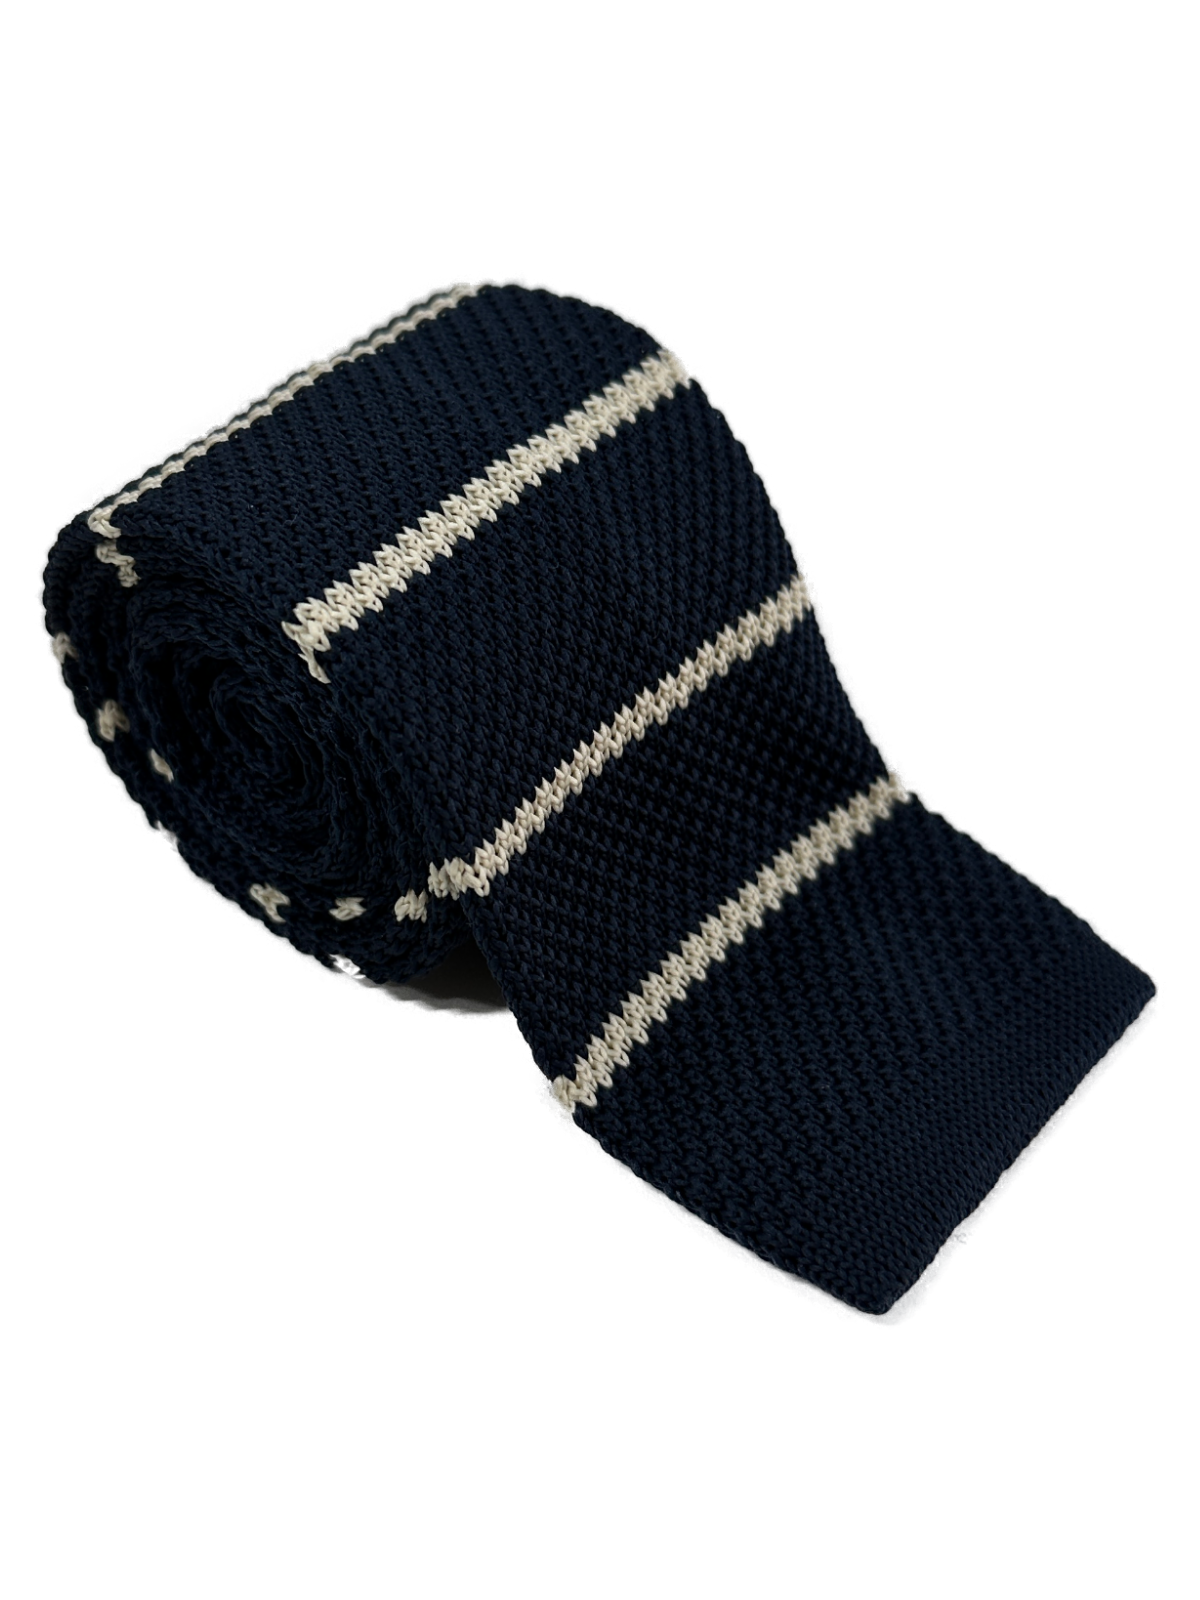 Stripe knitted tie - Navy